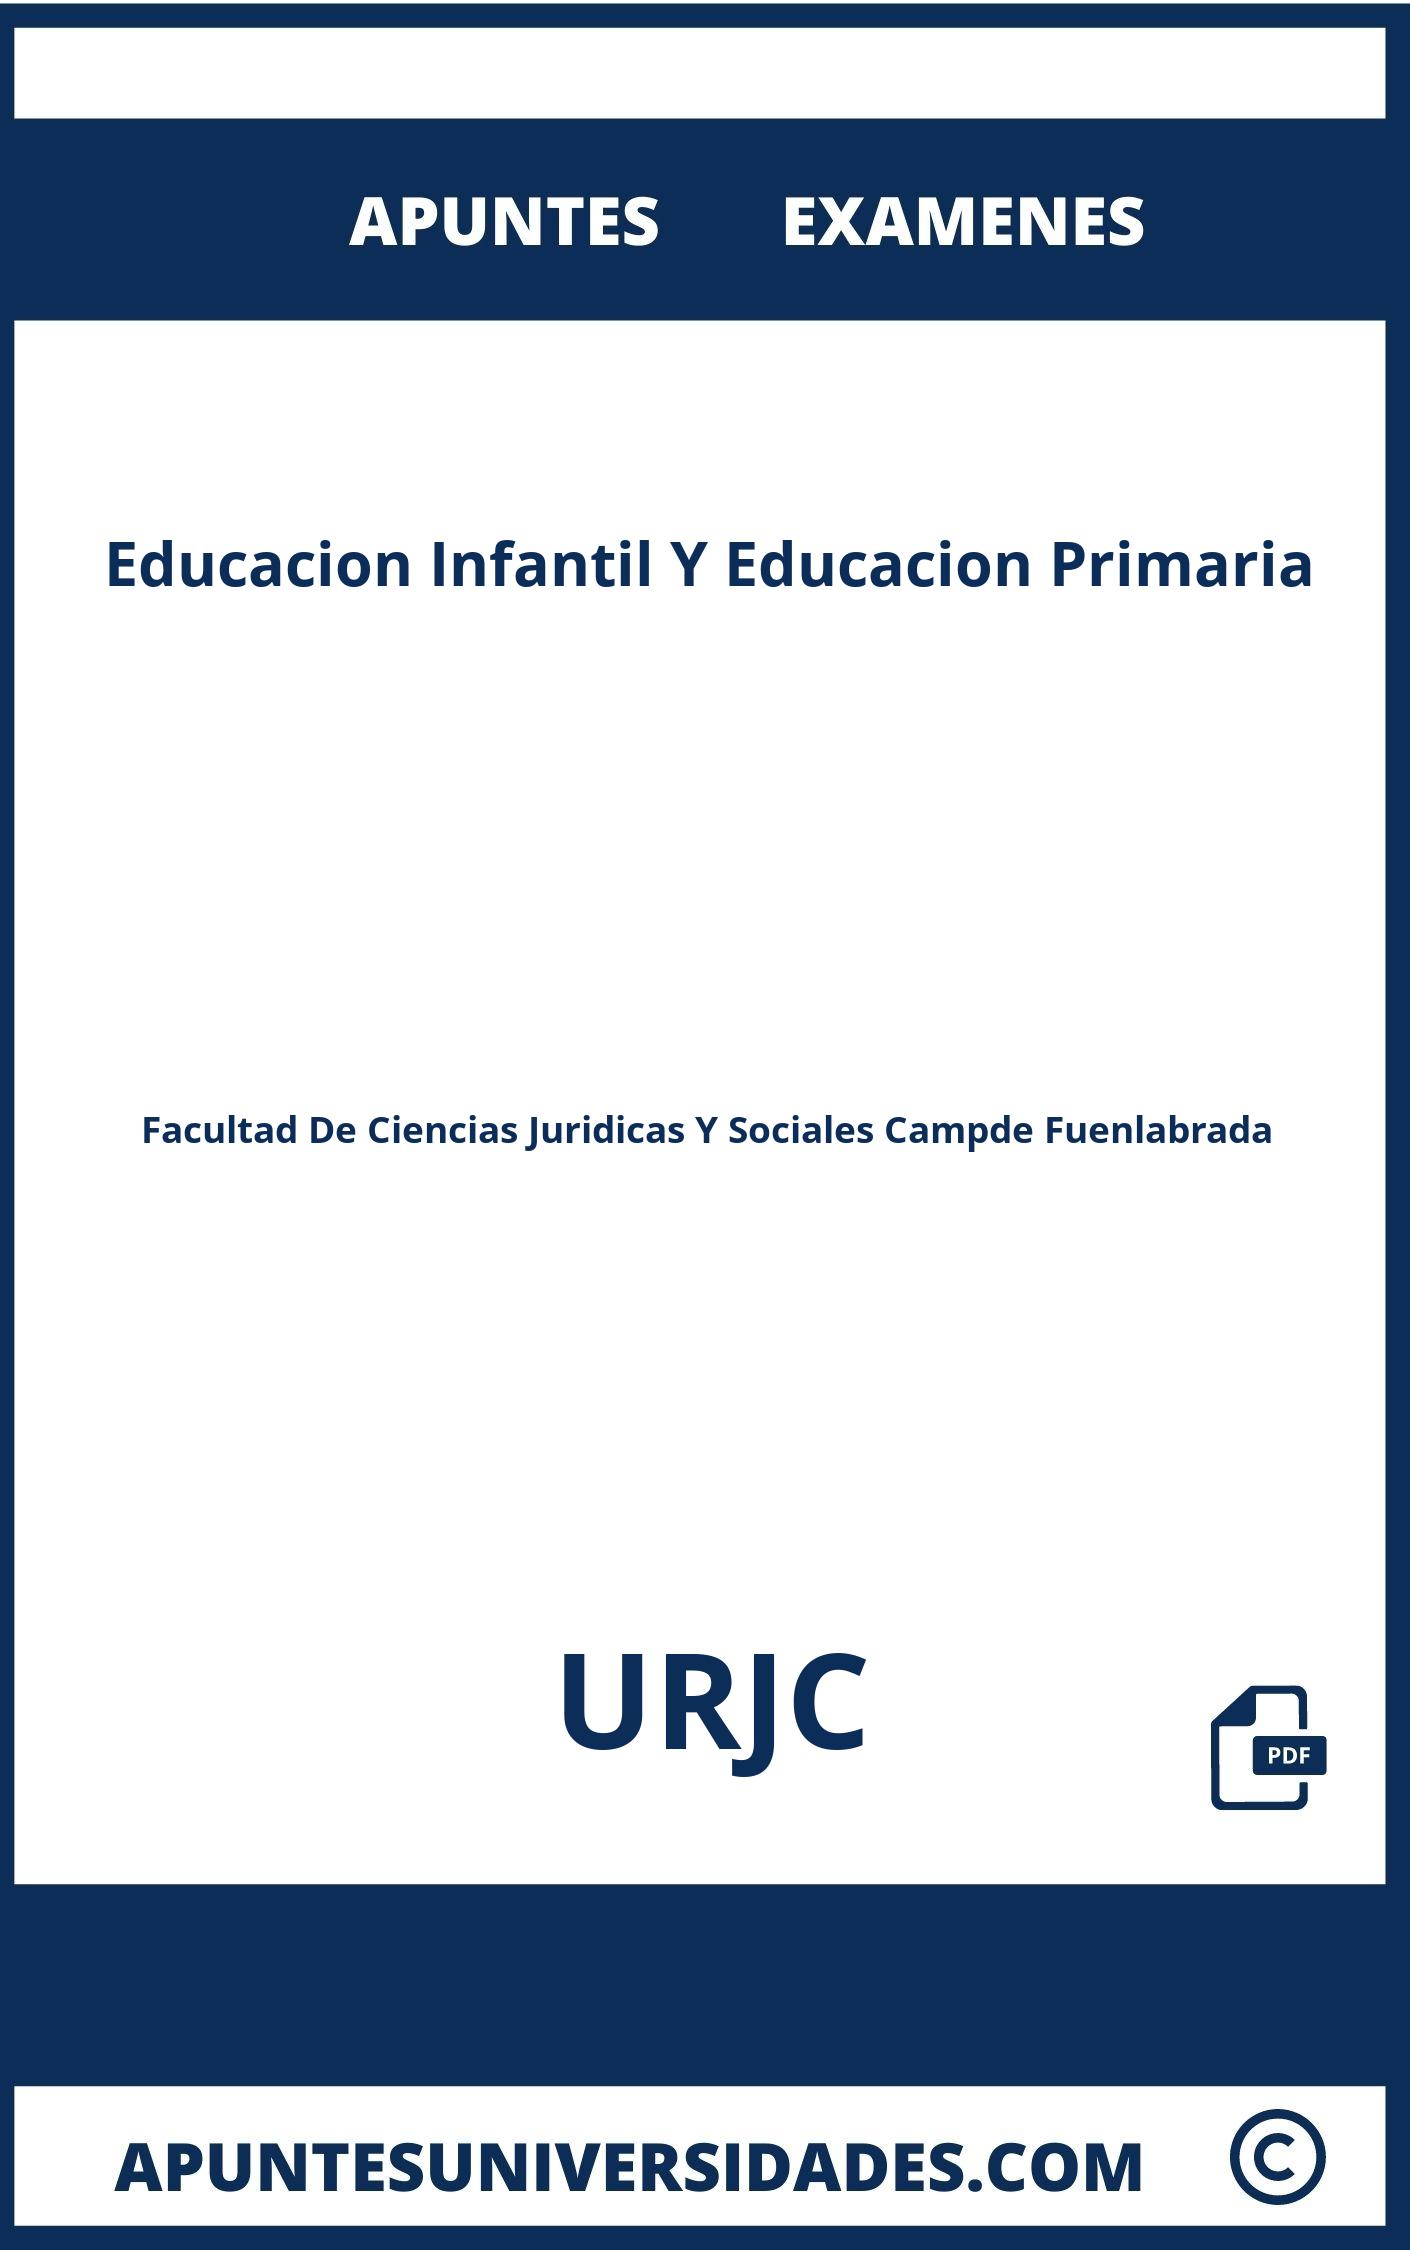 Examenes y Apuntes Educacion Infantil Y Educacion Primaria URJC